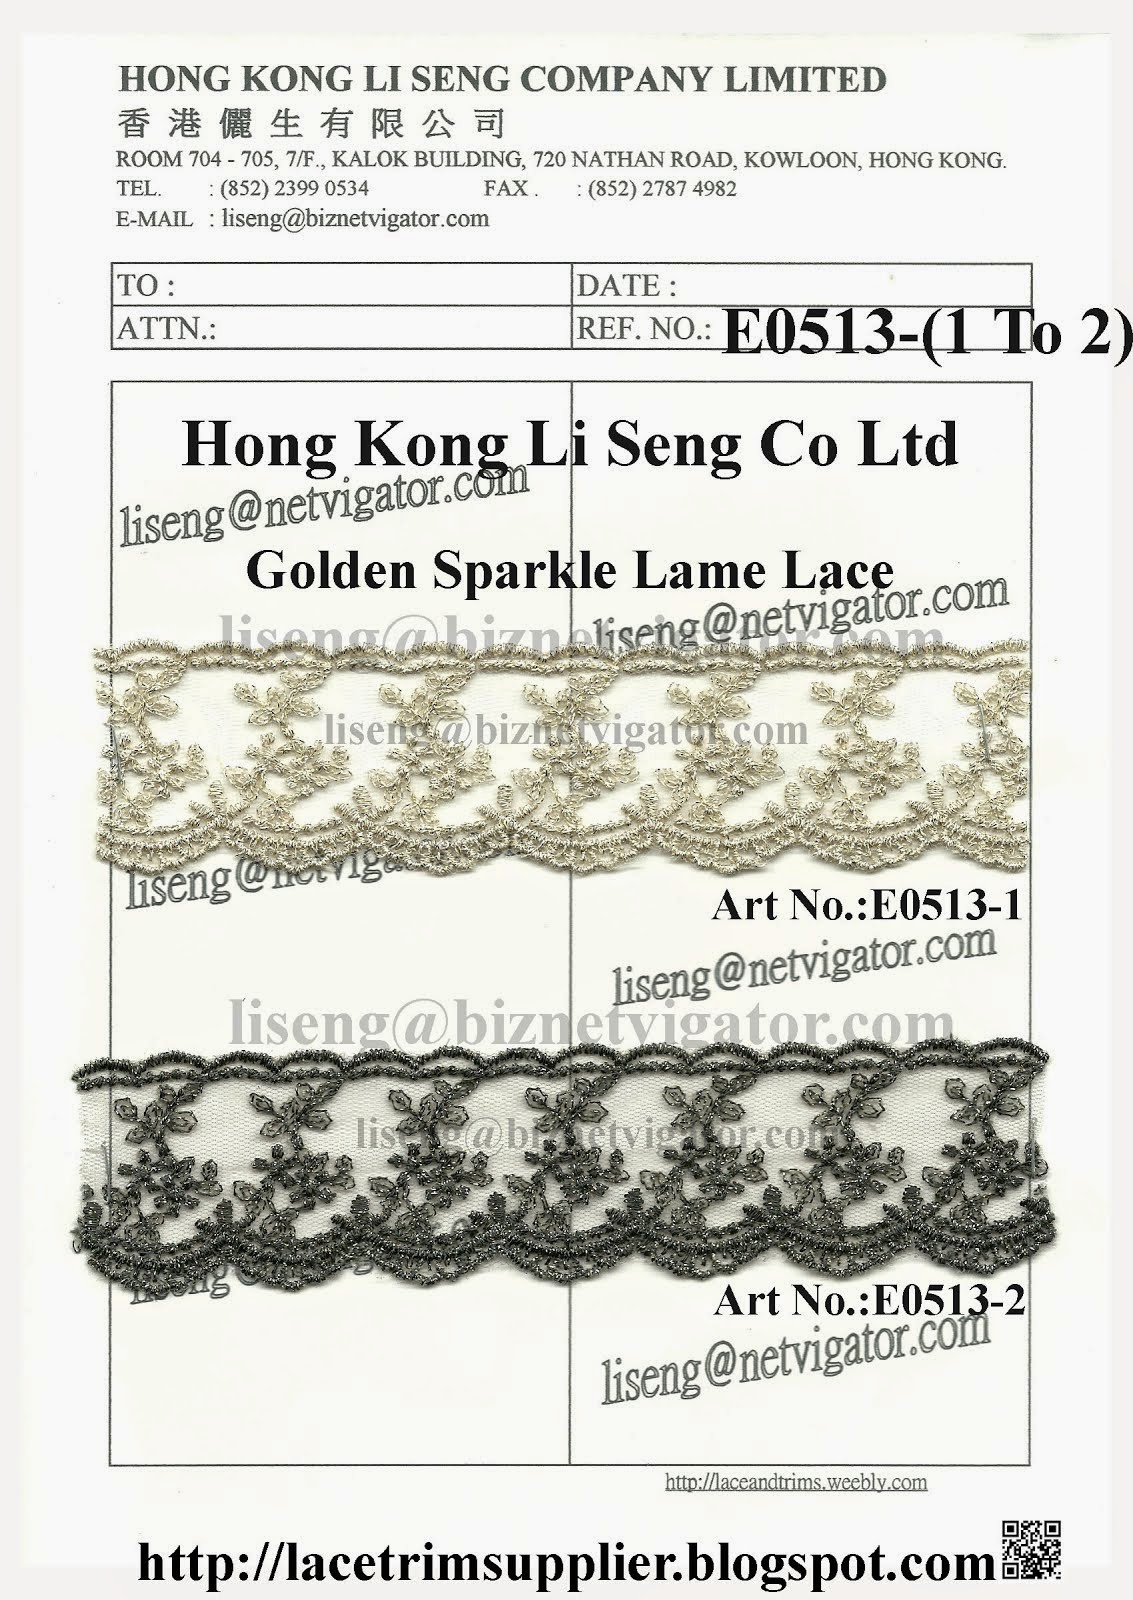 Golden Sparkle Lame Lace Trims Factory - Hong Kong Li Seng Co Ltd